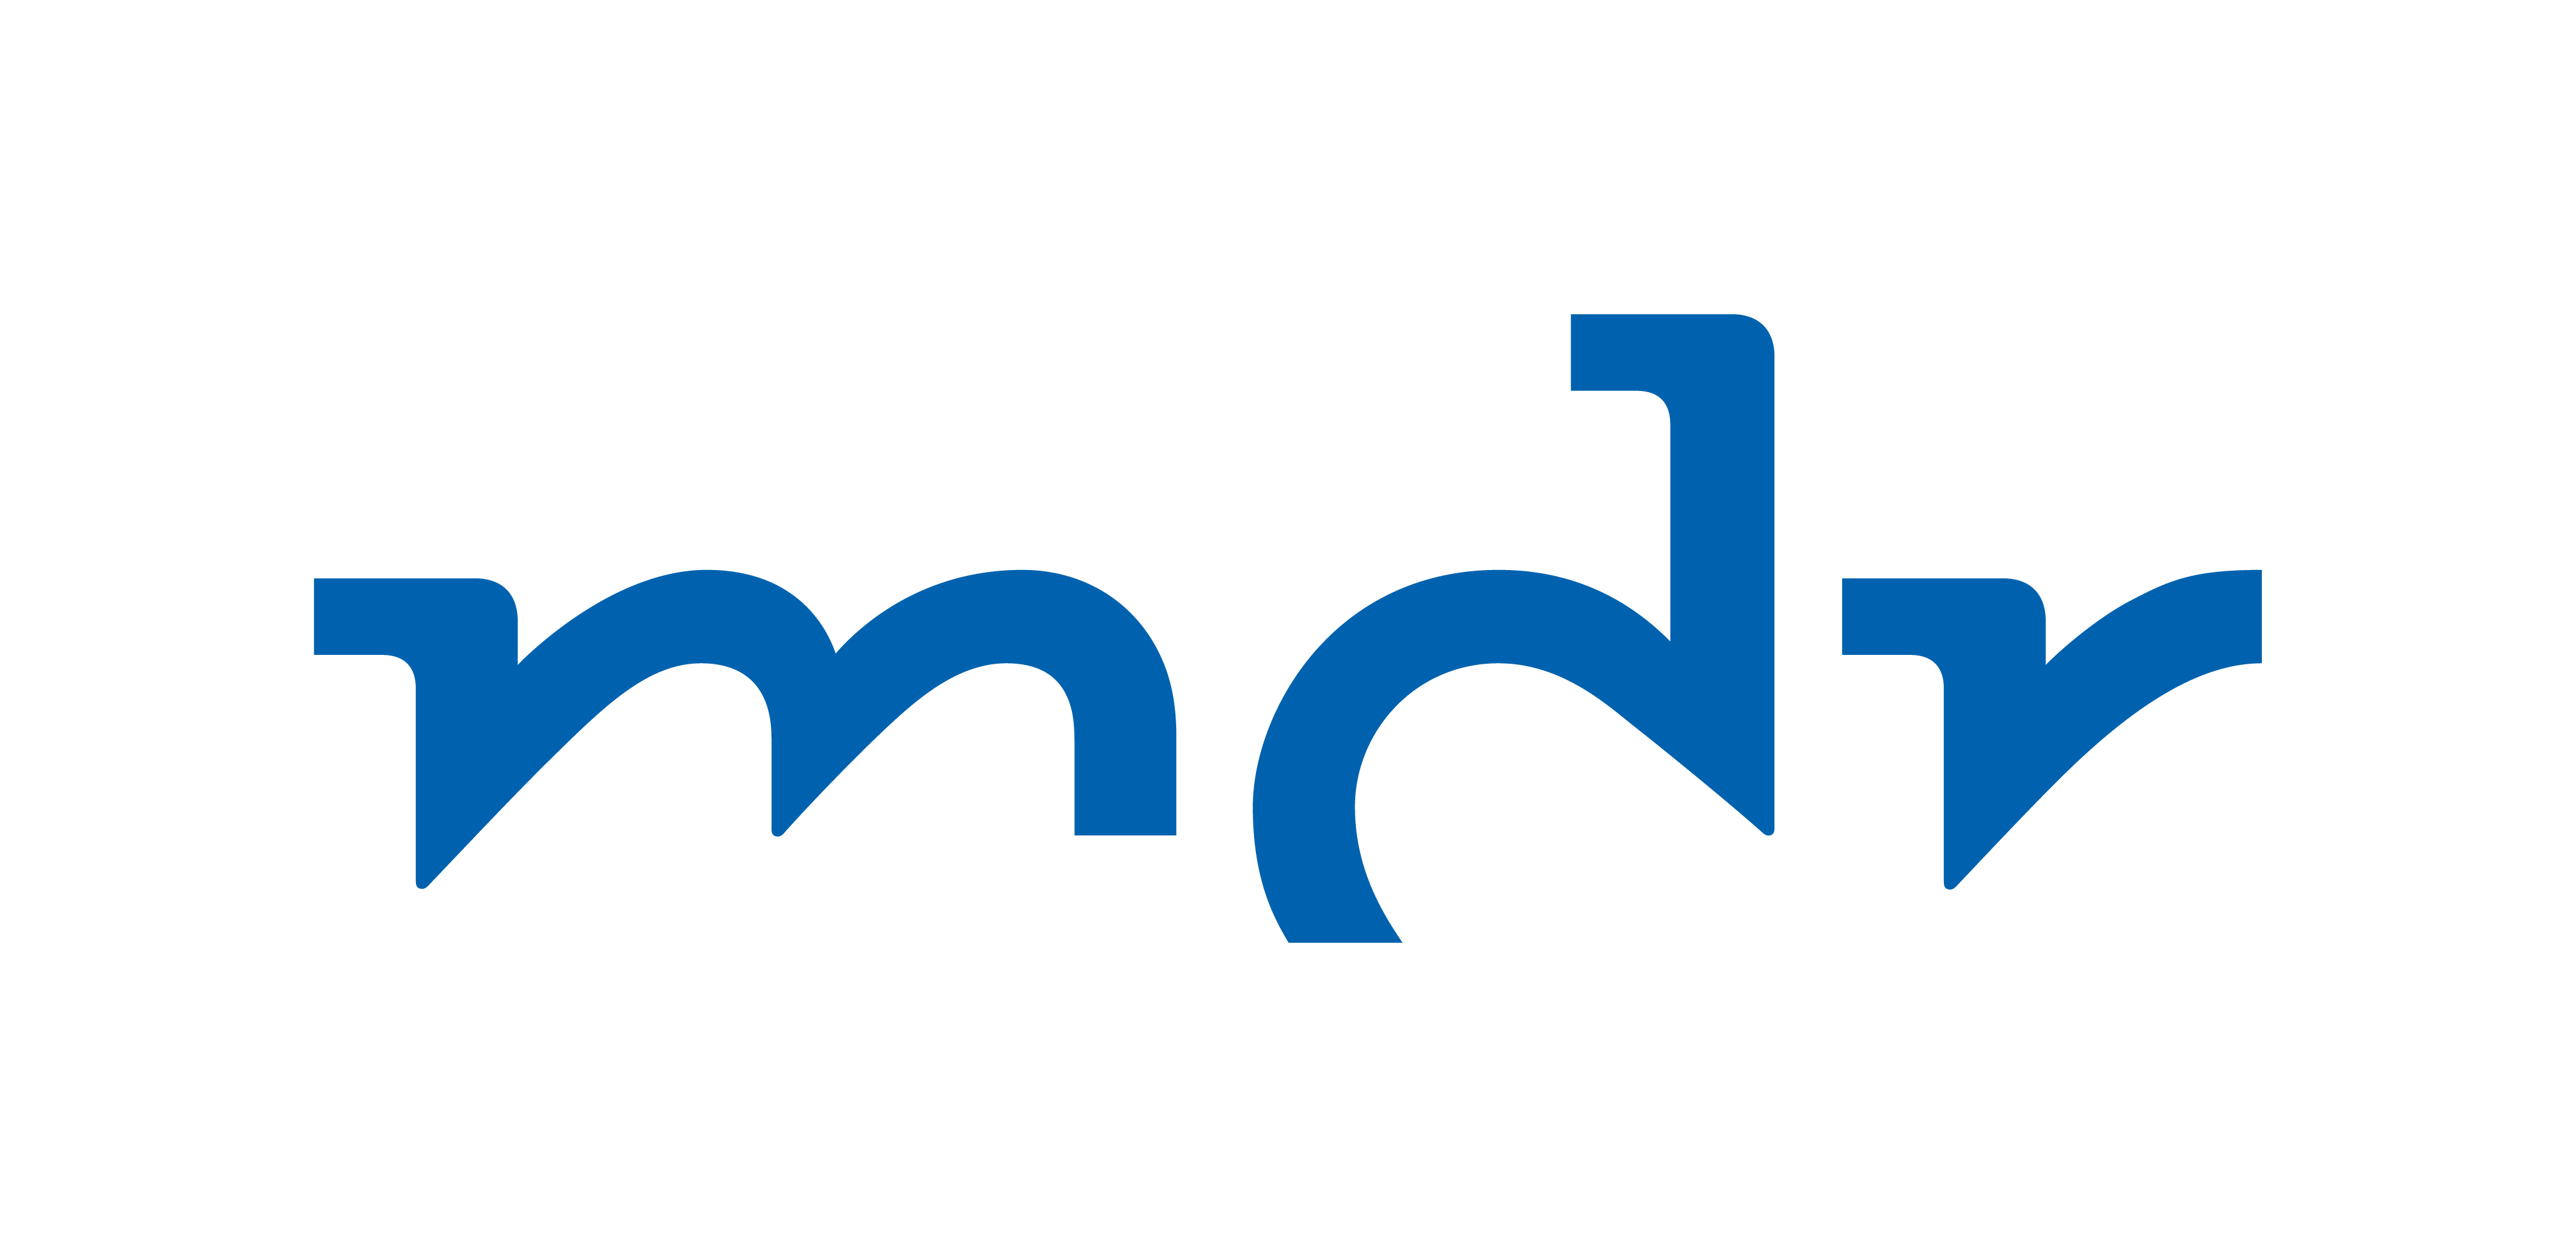 MDR Typogramm Blau sRGB